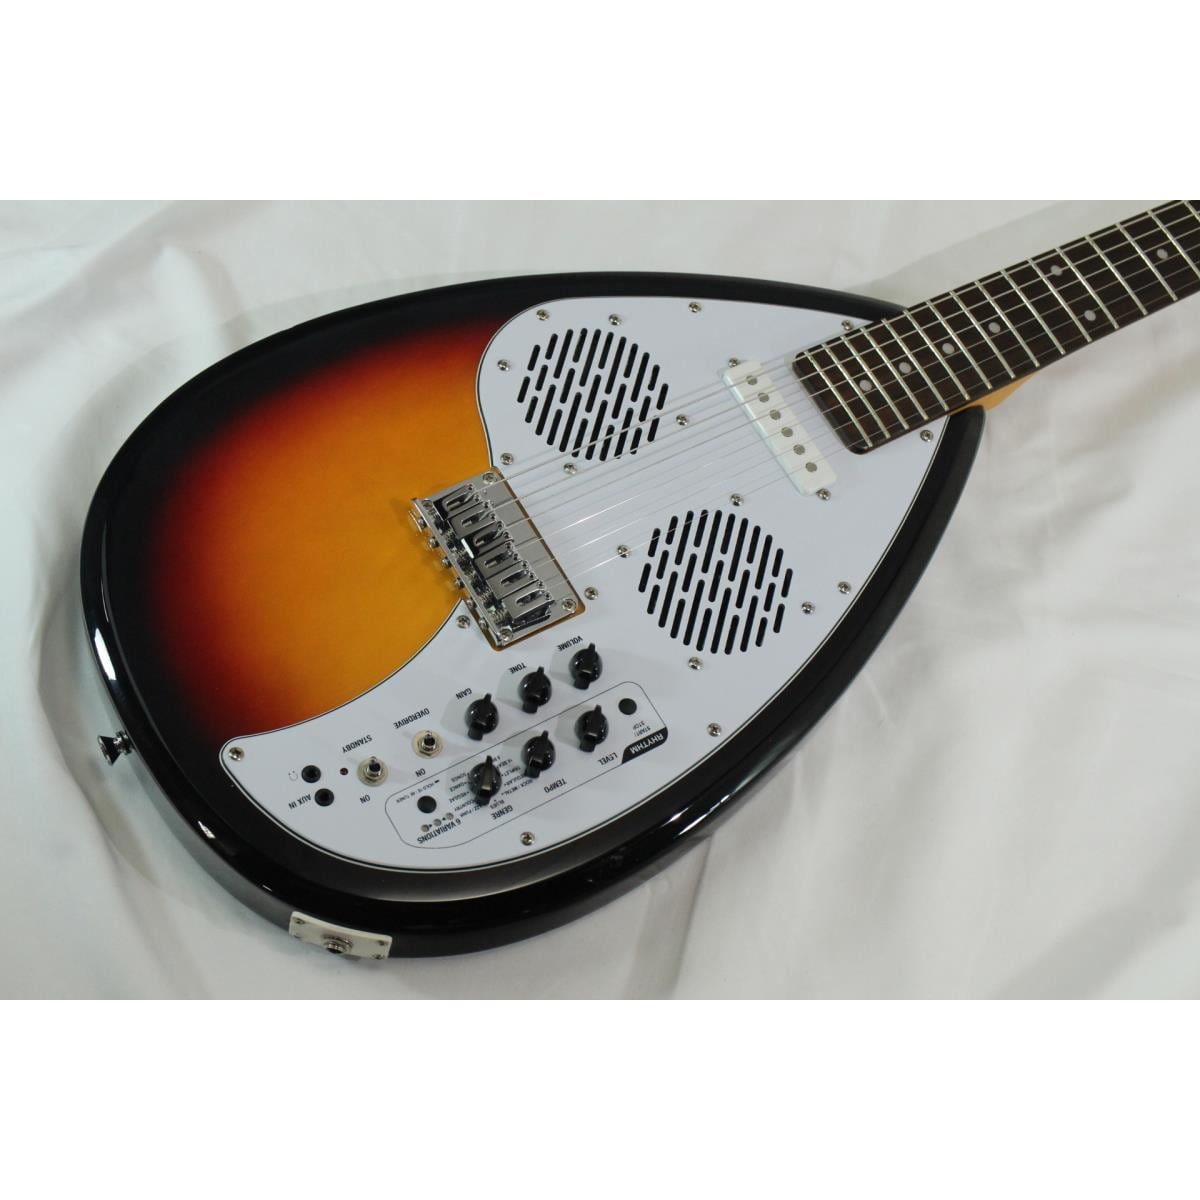 VOX APACHE-1 アンプ内蔵ミニギター トラベルギター - エレキギター